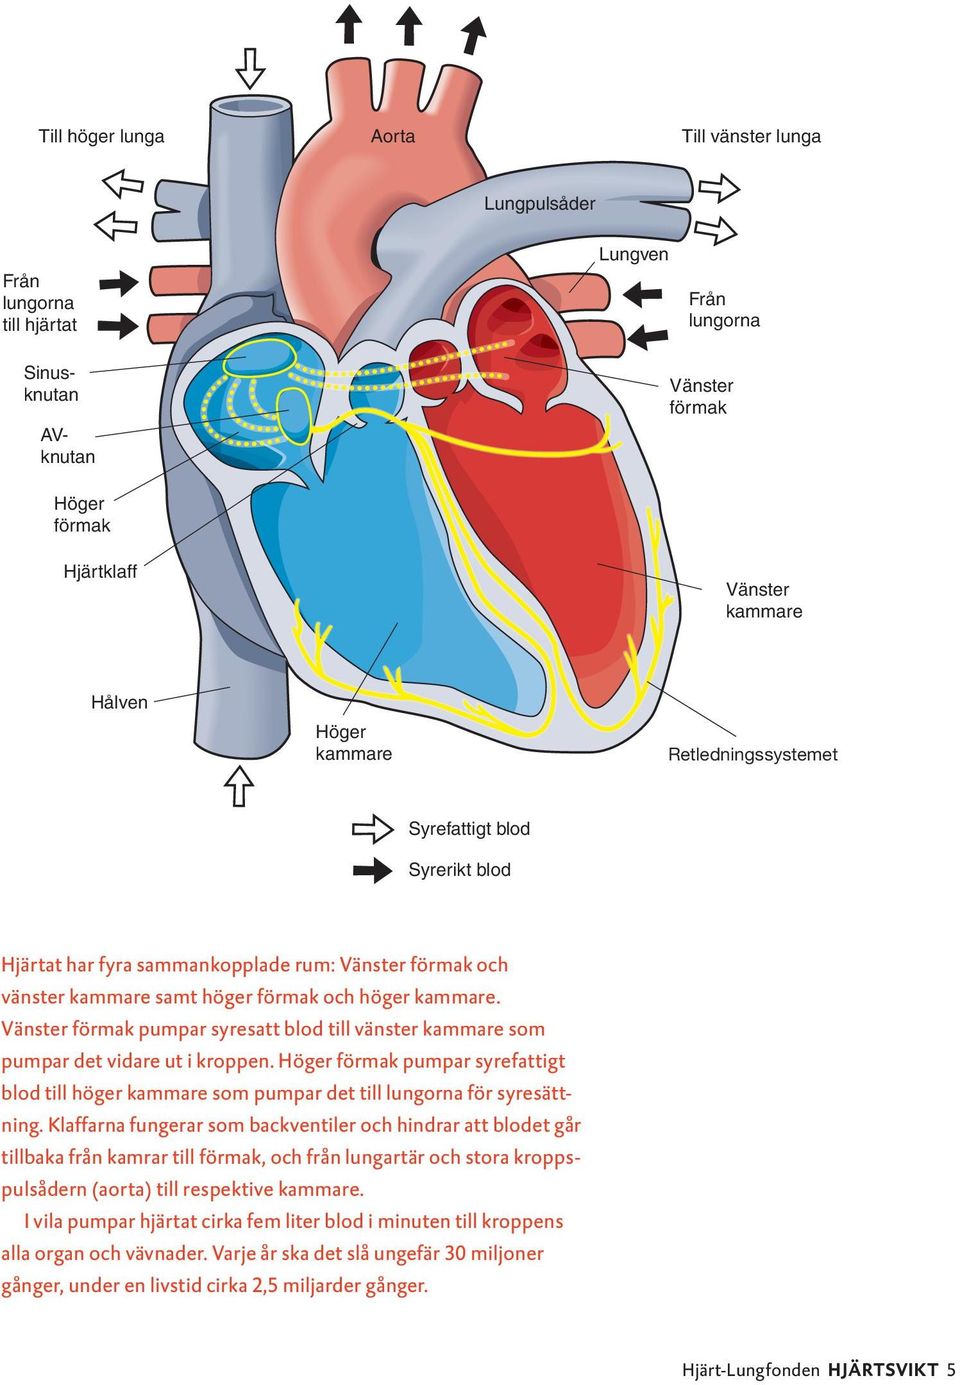 Vänster förmak pumpar syresatt blod till vänster kammare som pumpar det vidare ut i kroppen. Höger förmak pumpar syrefattigt blod till höger kammare som pumpar det till lungorna för syresättning.